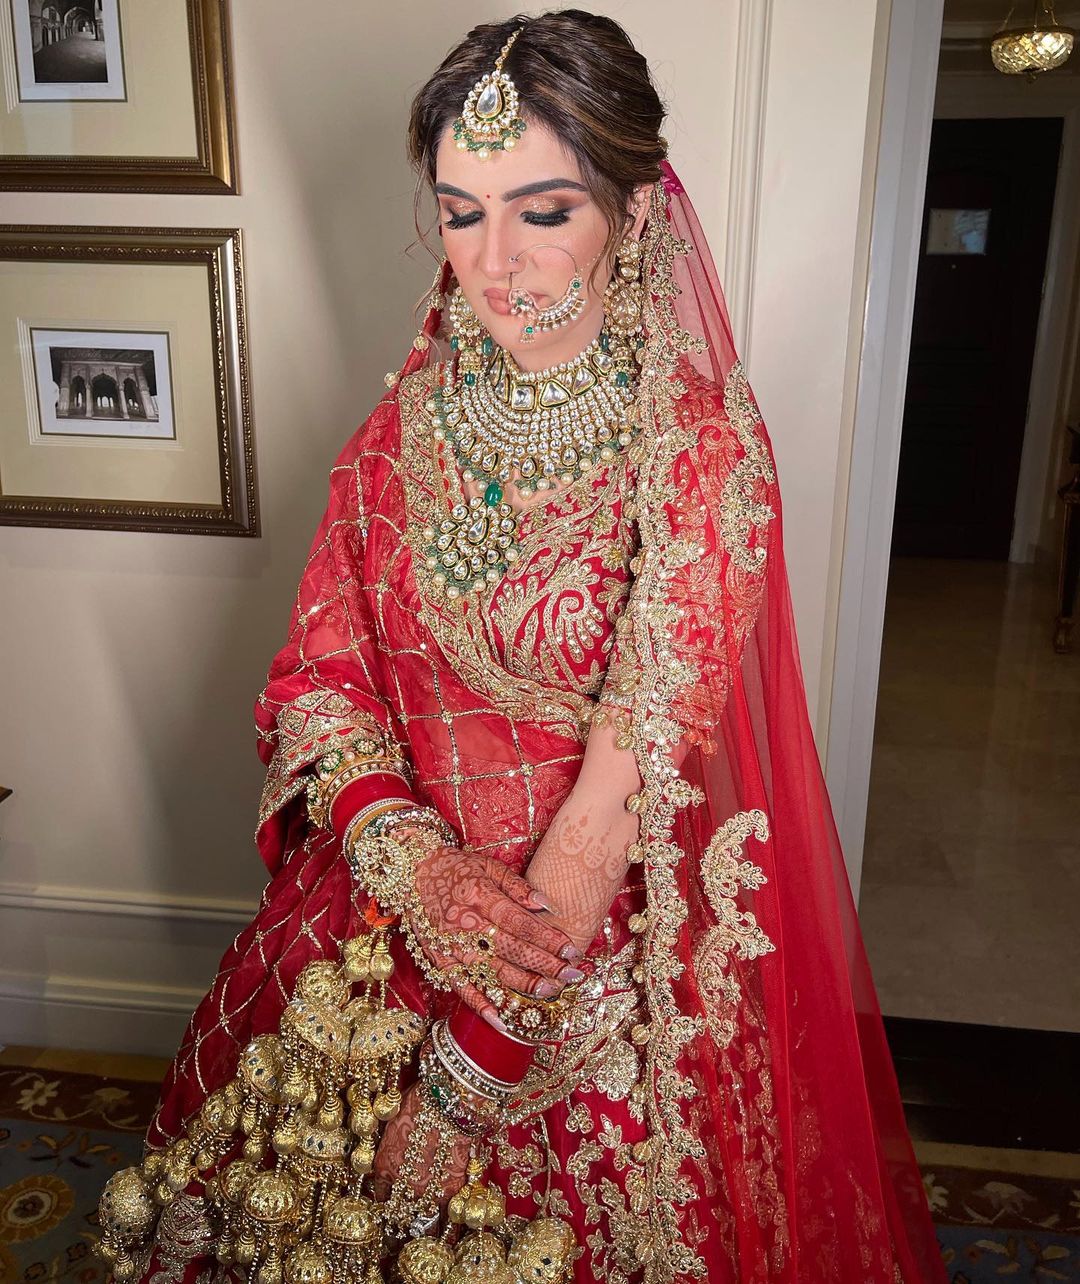 Buy Indian Bridal Lehenga Choli | Designer Wedding Lehengas Online UK: Red